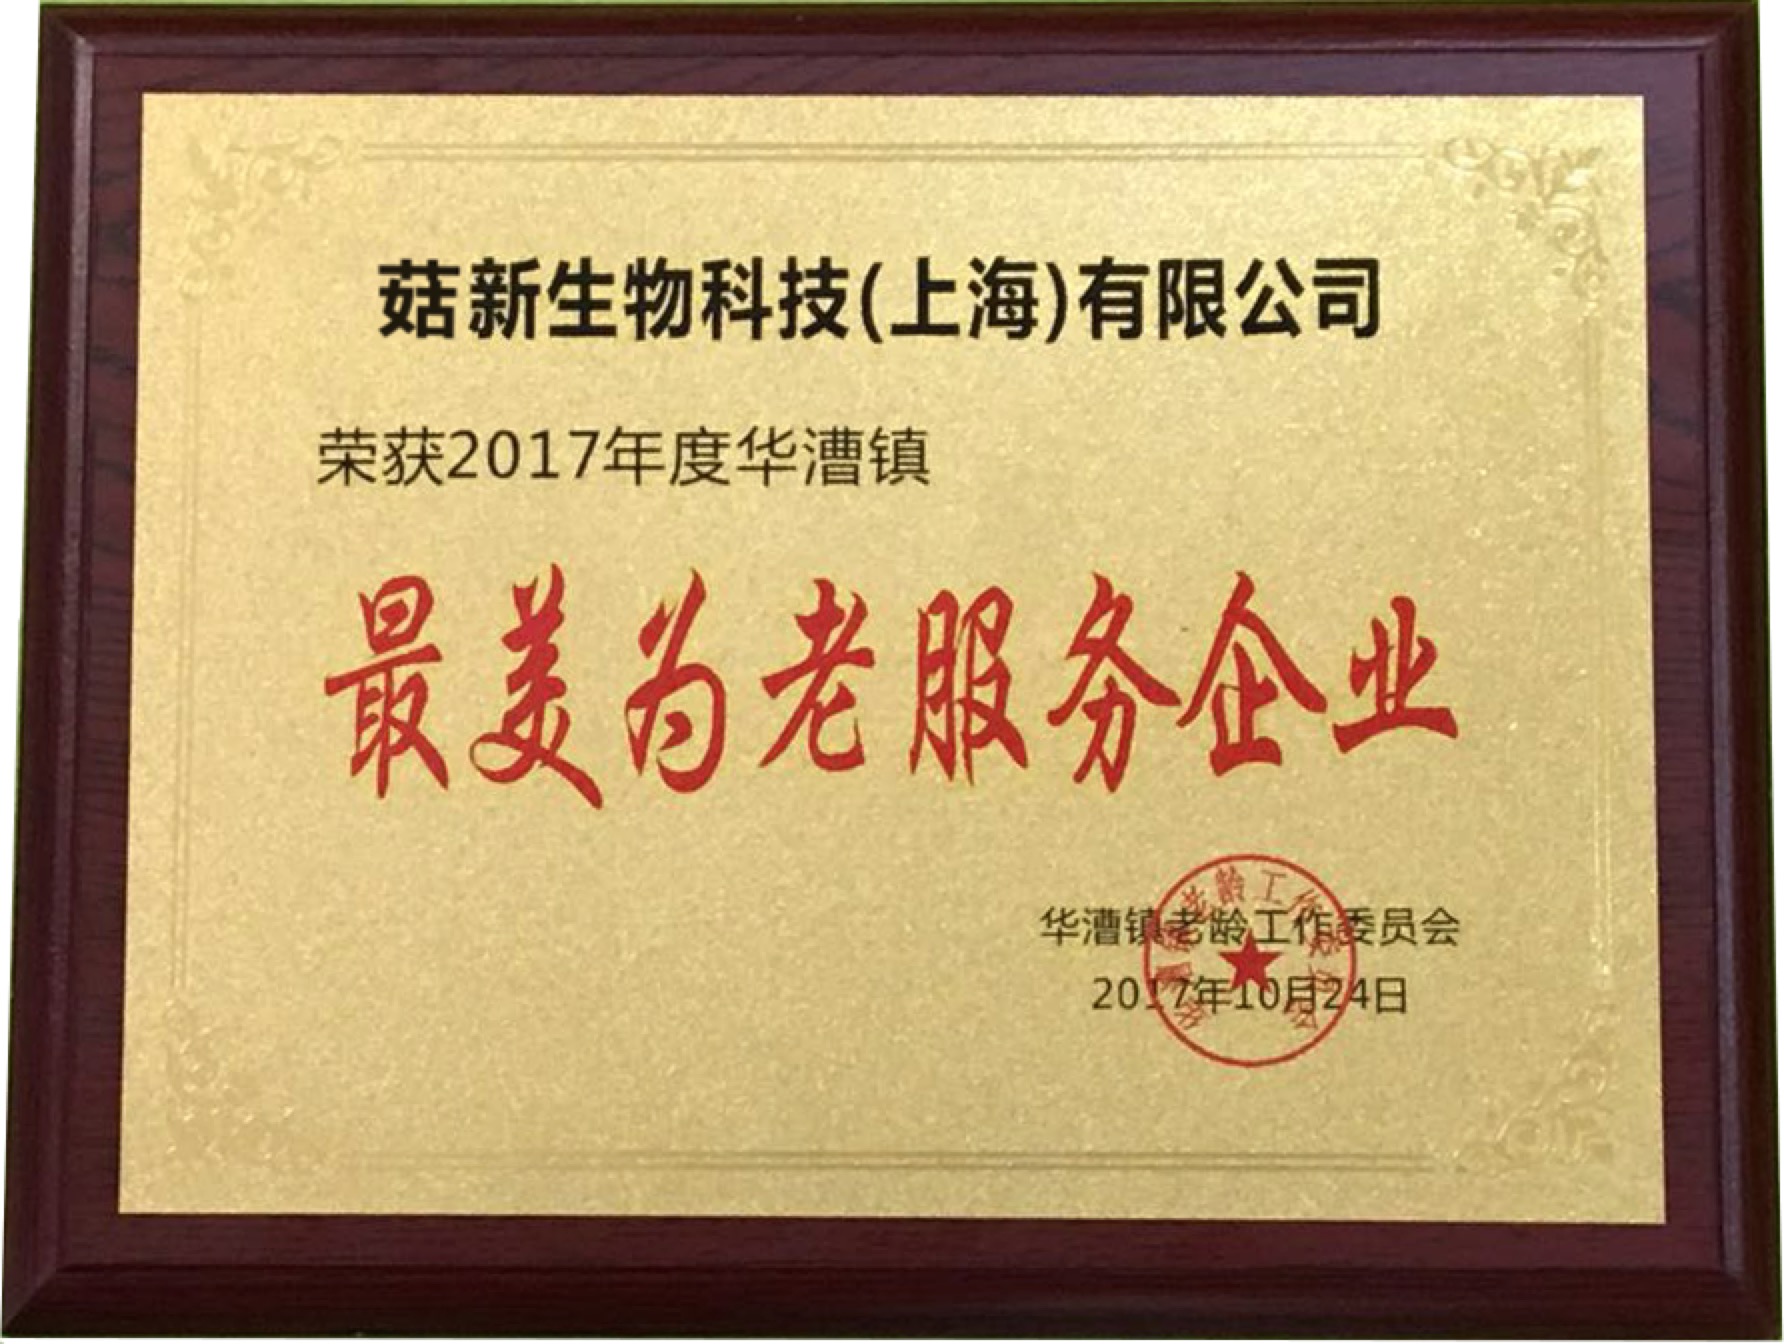 菇新生物荣获2017年度“最美为老服务企业”荣誉称号